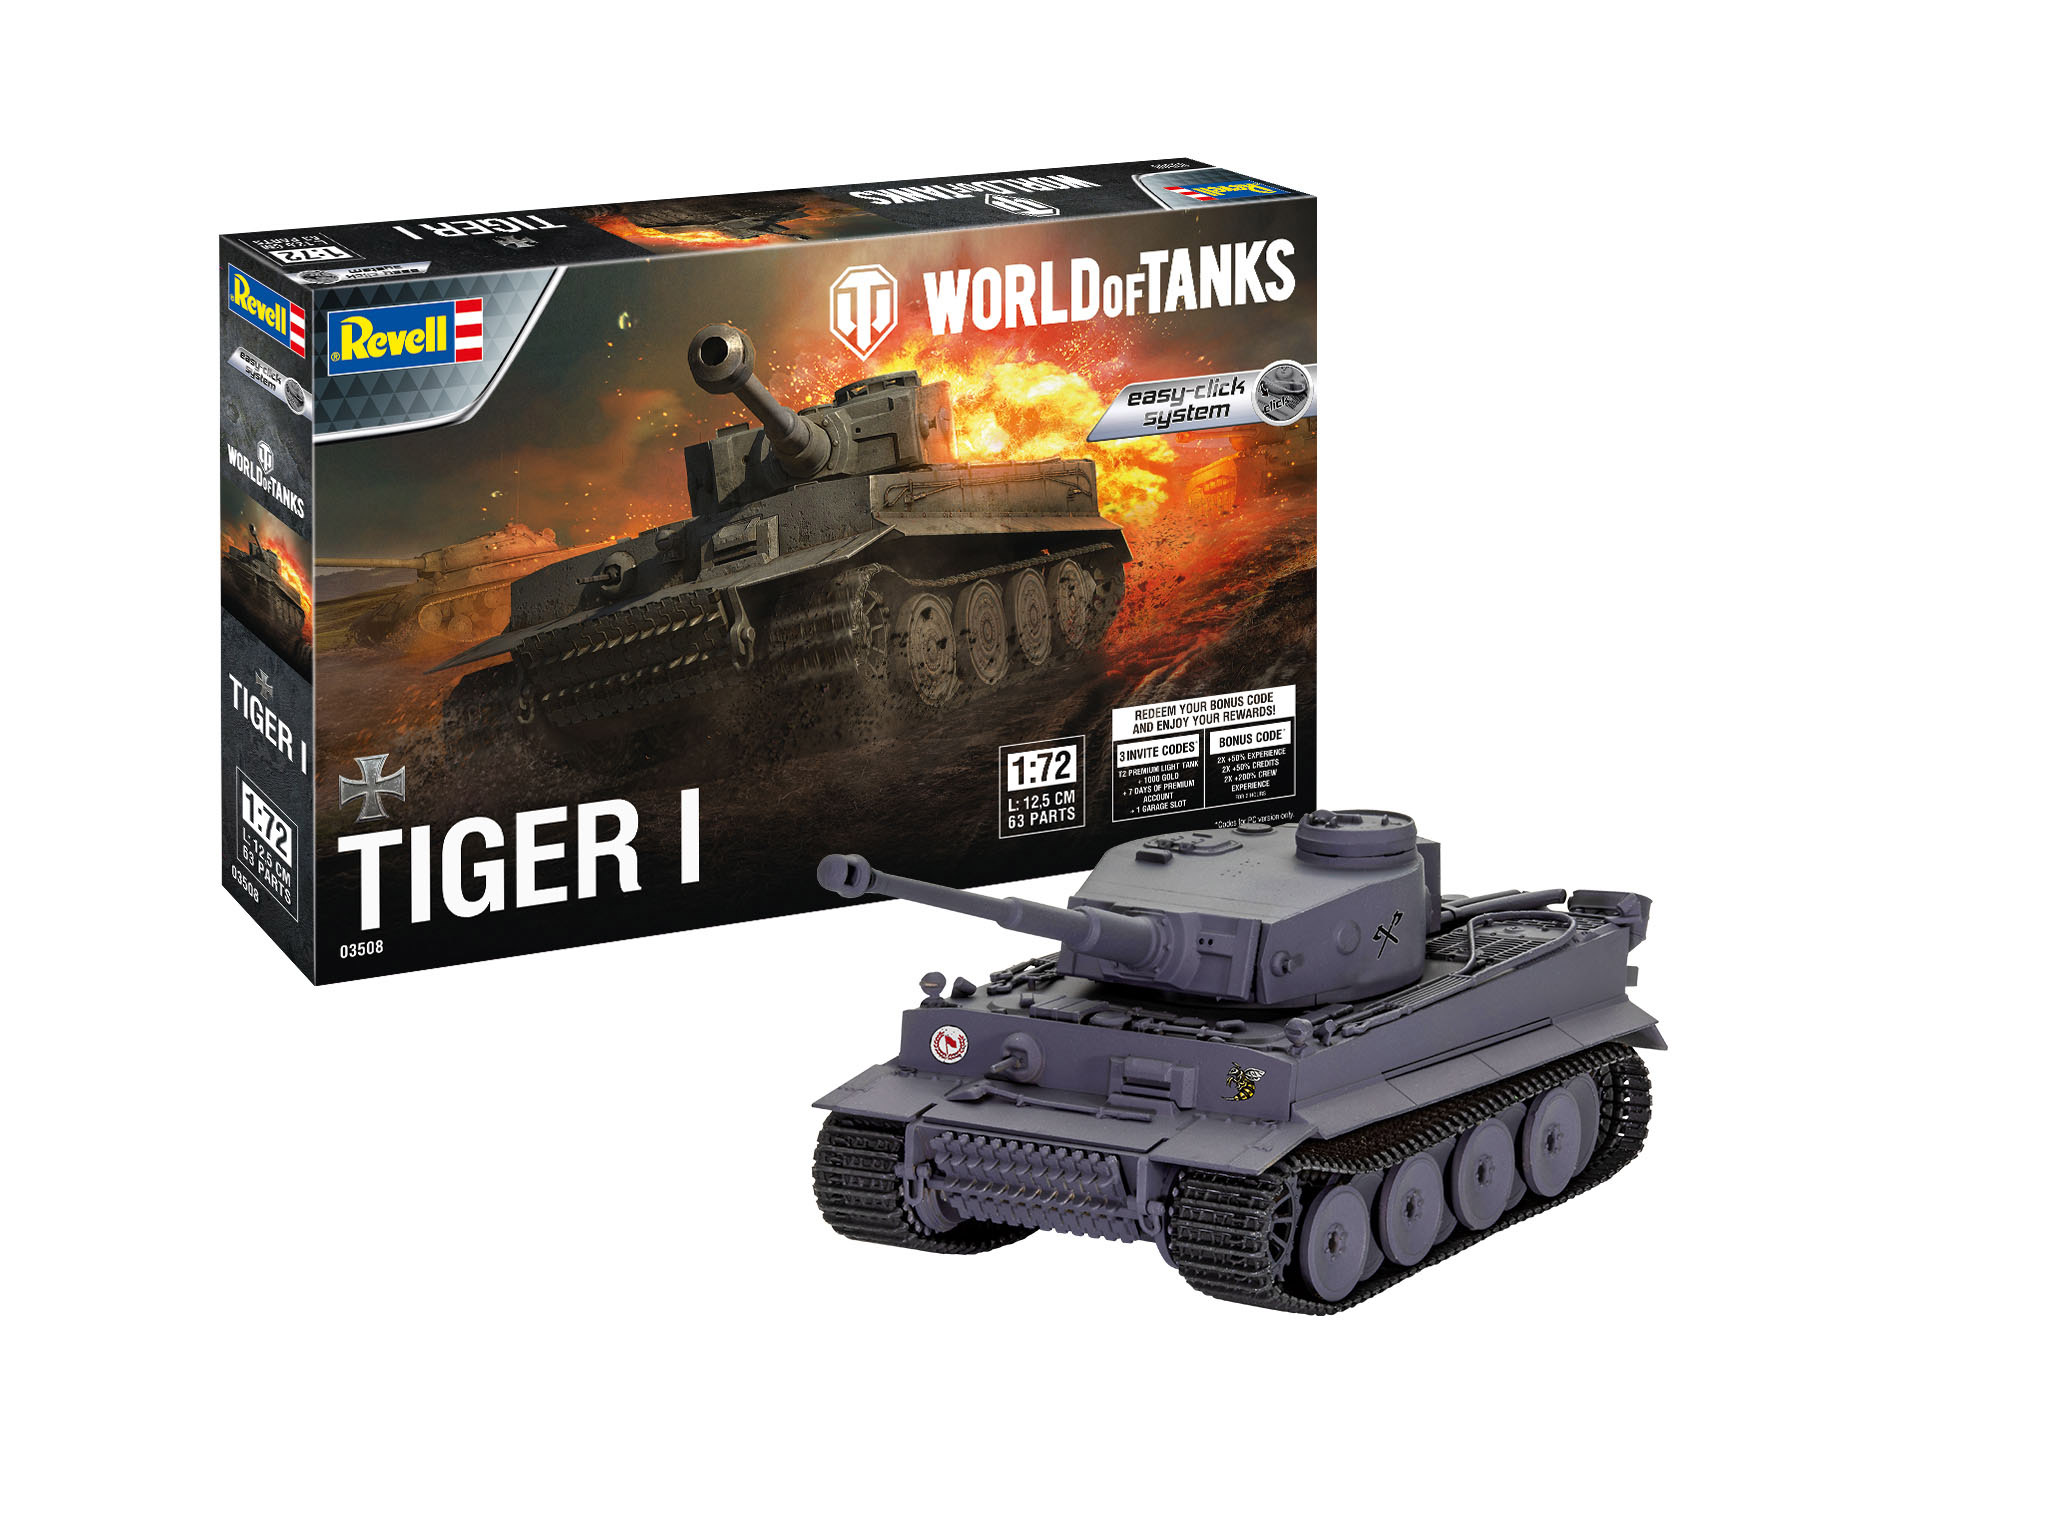 Revell Tiger I "World of Tanks" Easy Click in 1:72 bouwpakket